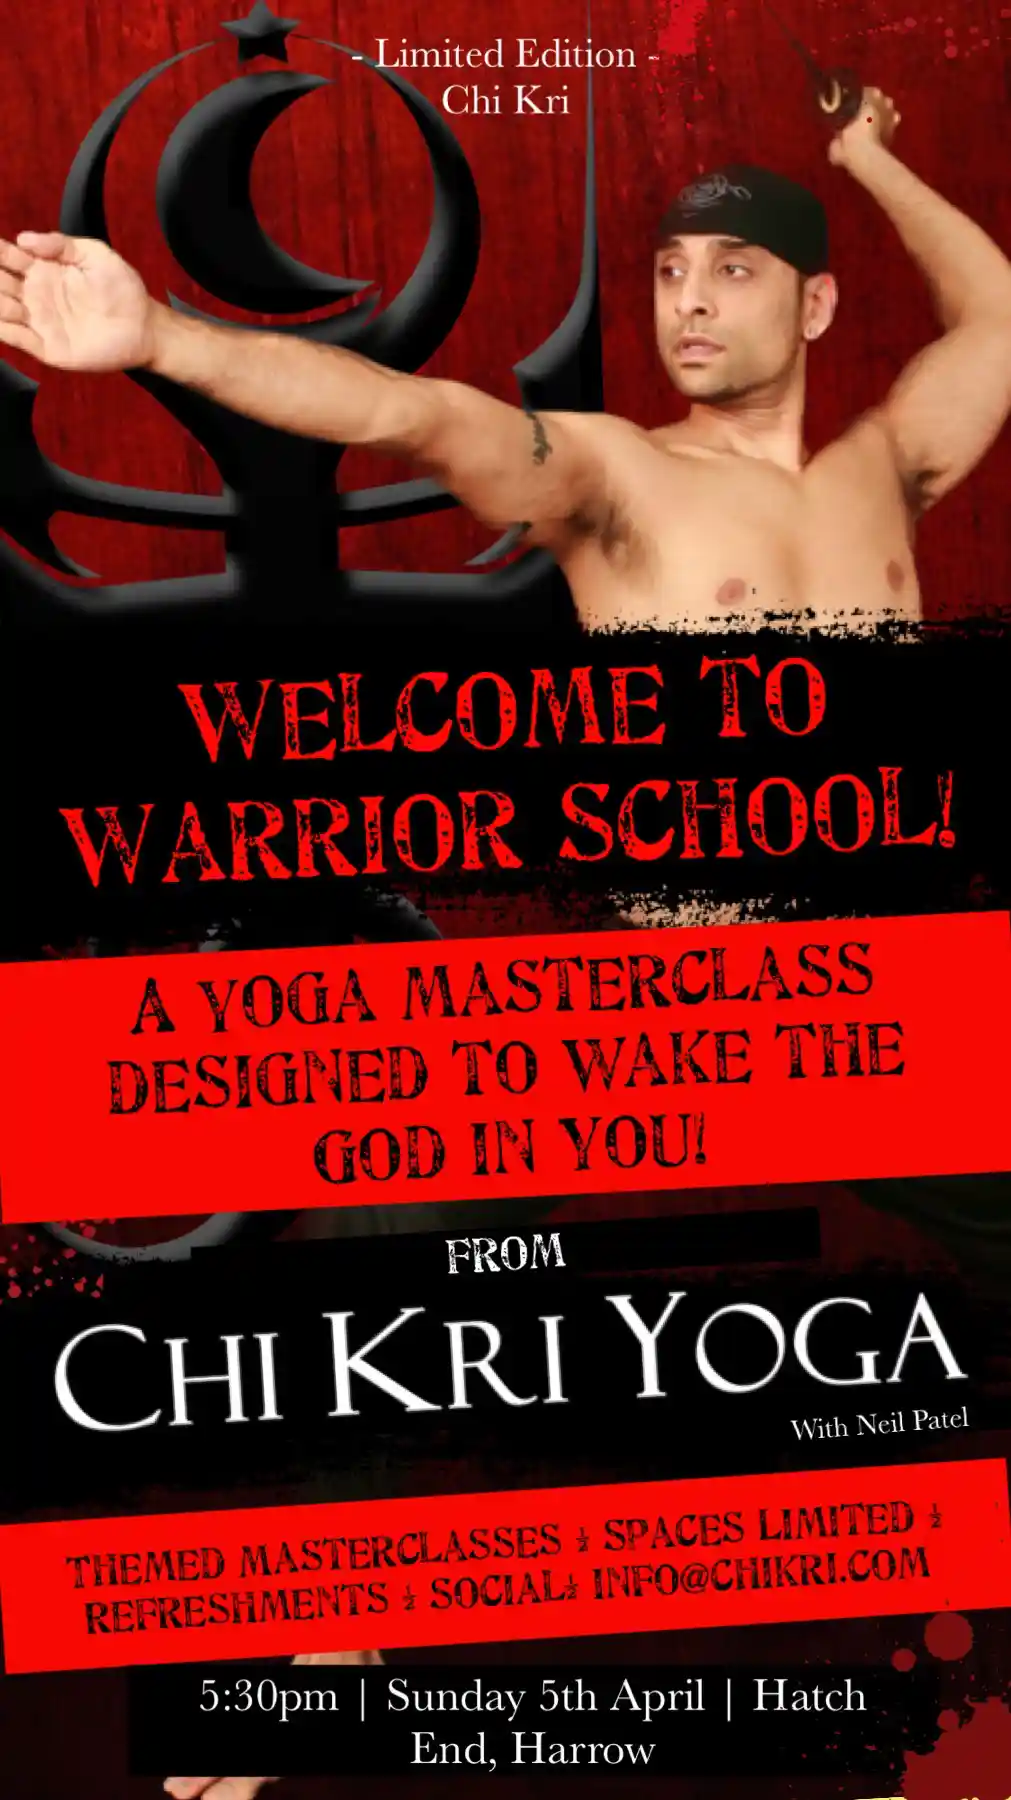 Chi Kri Yoga - Warrior School